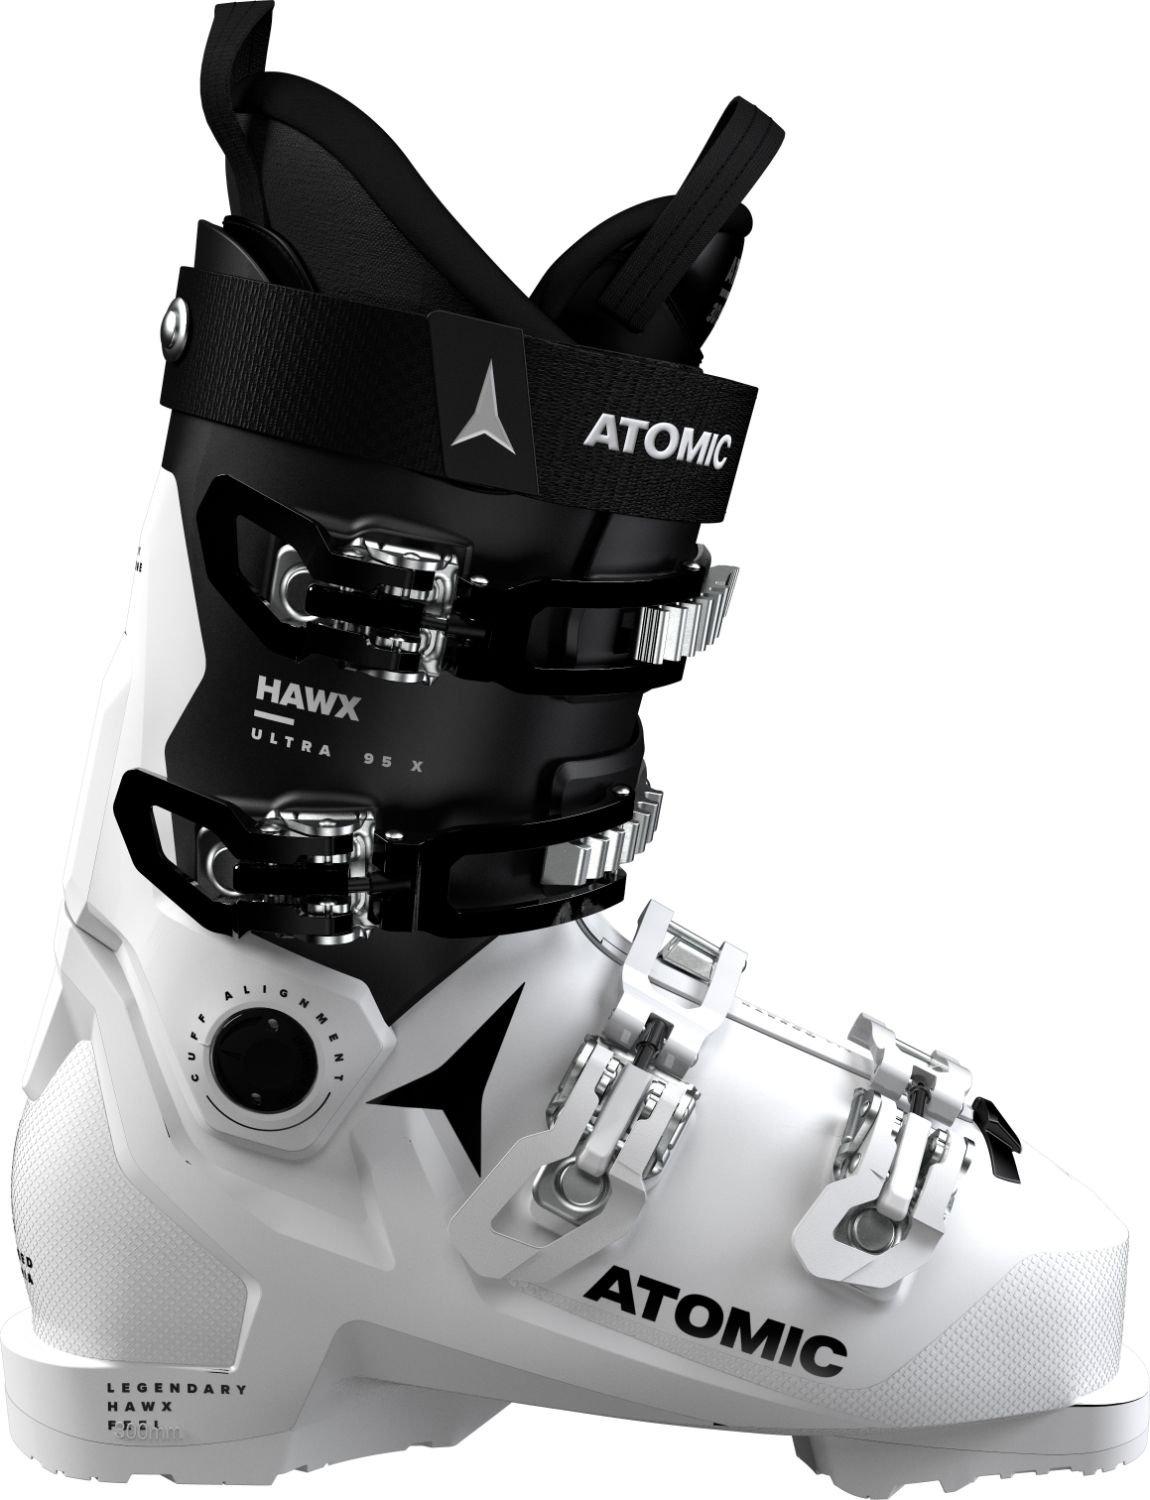 Dámske lyžiarky Atomic Hawx Ultra 95 X GW W Veľkosť: 24 cm